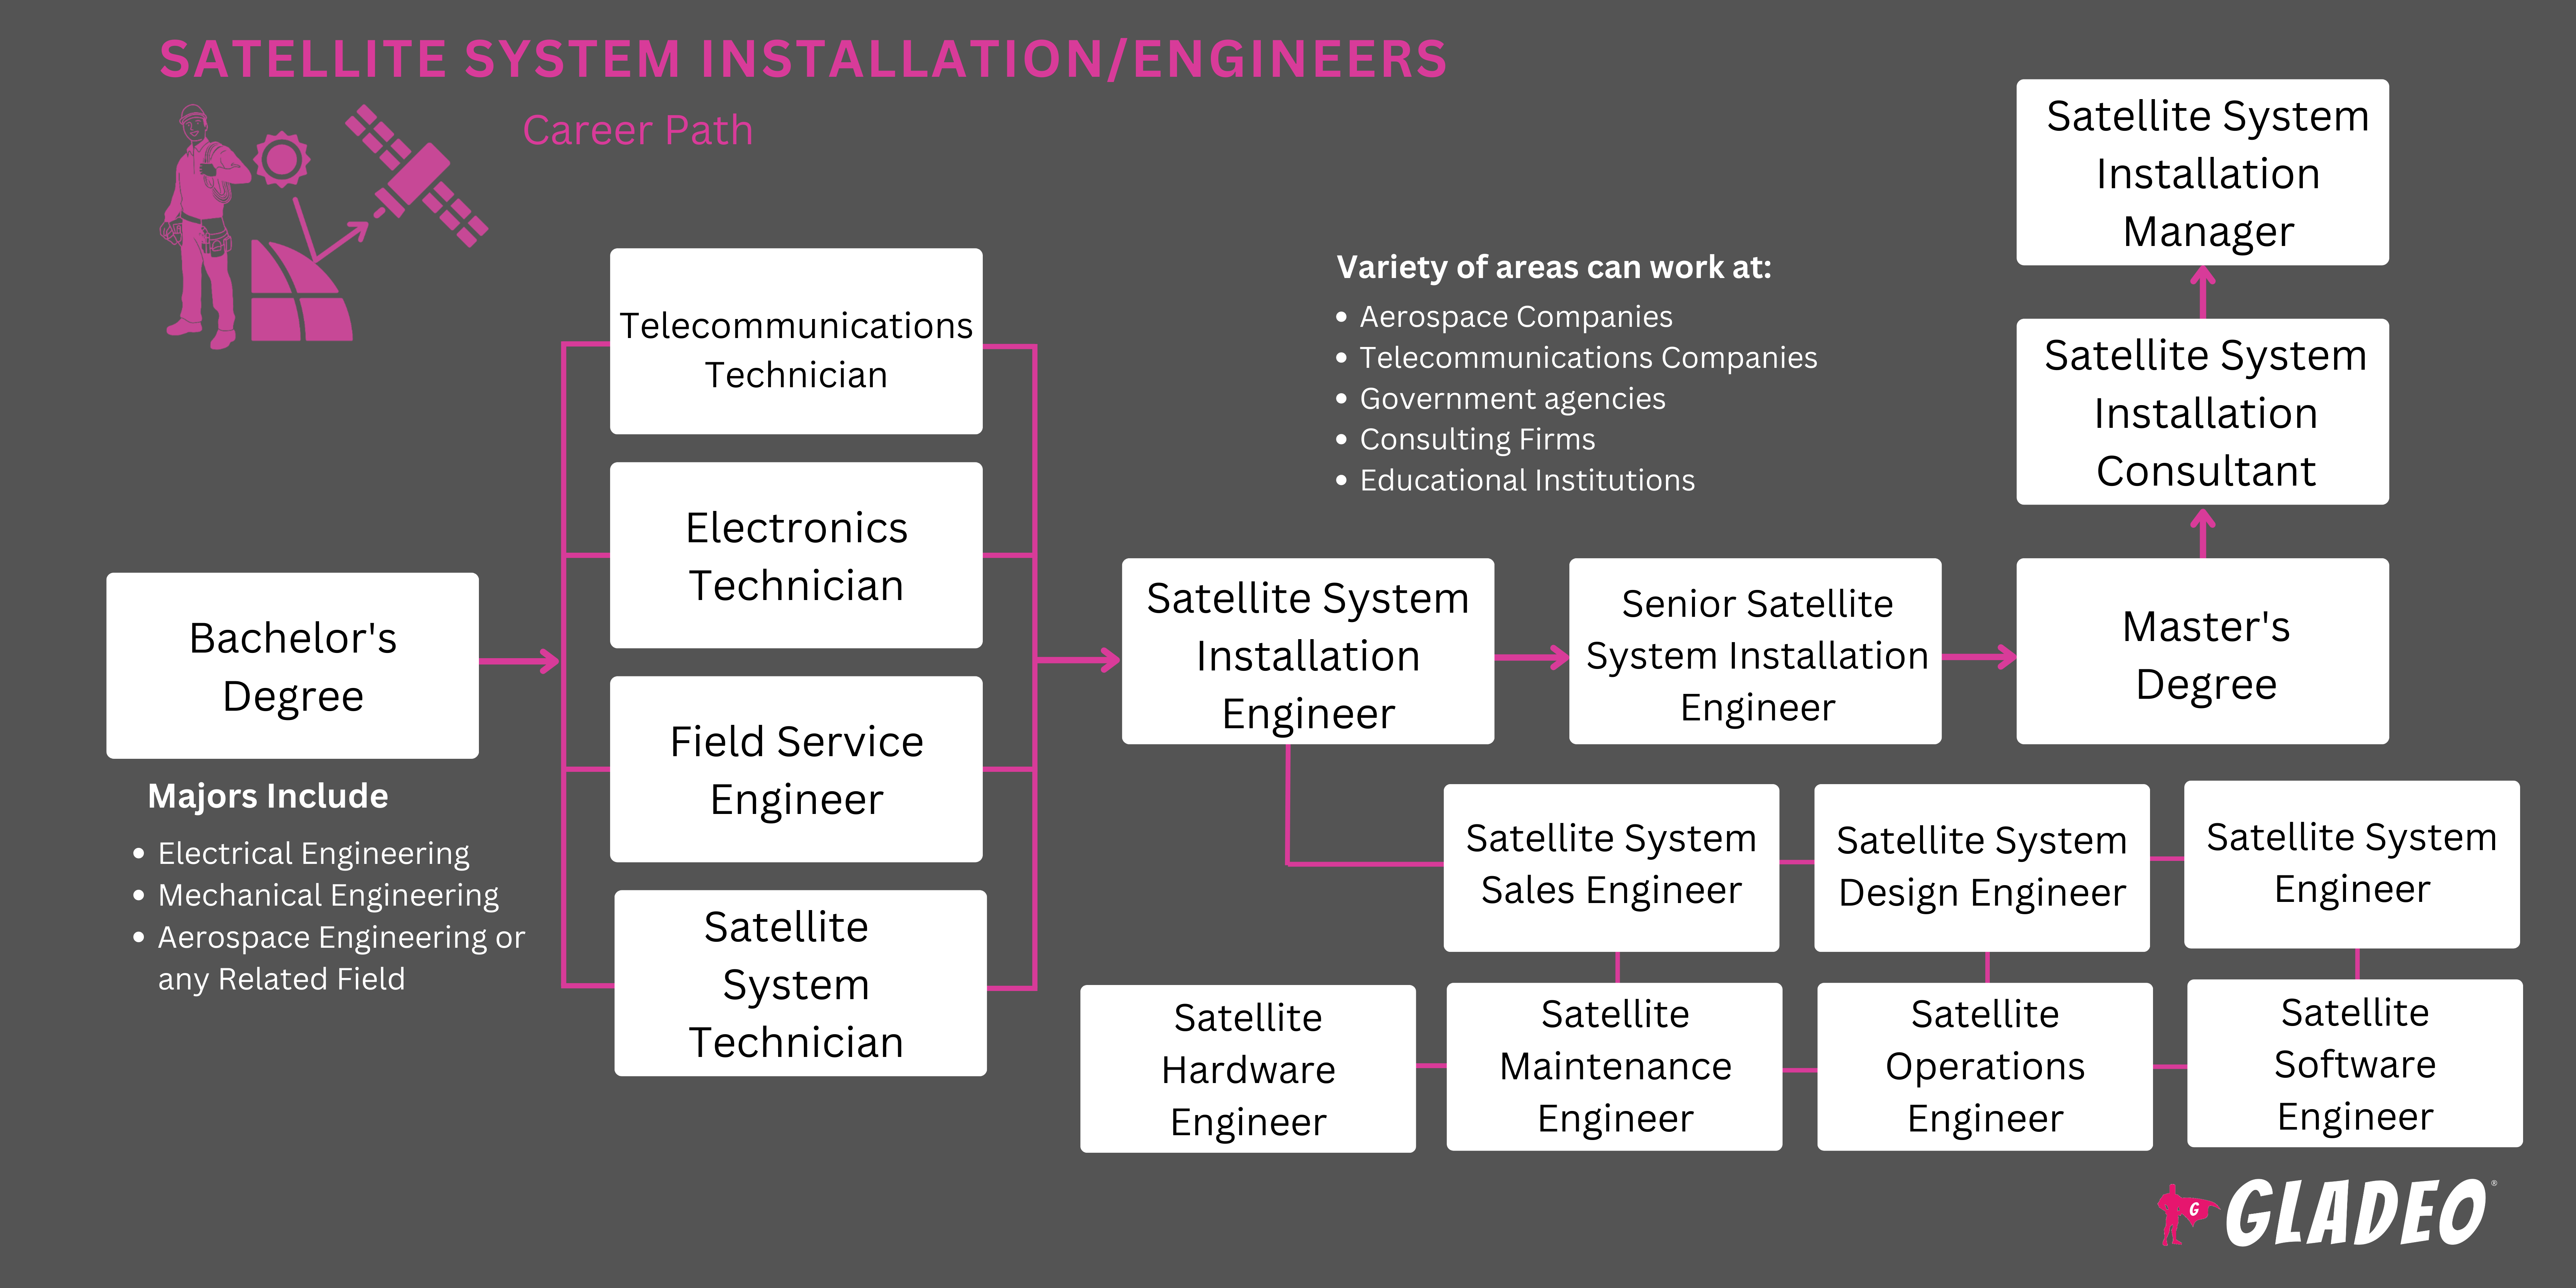 Hoja de ruta de los instaladores/ingenieros de sistemas por satélite